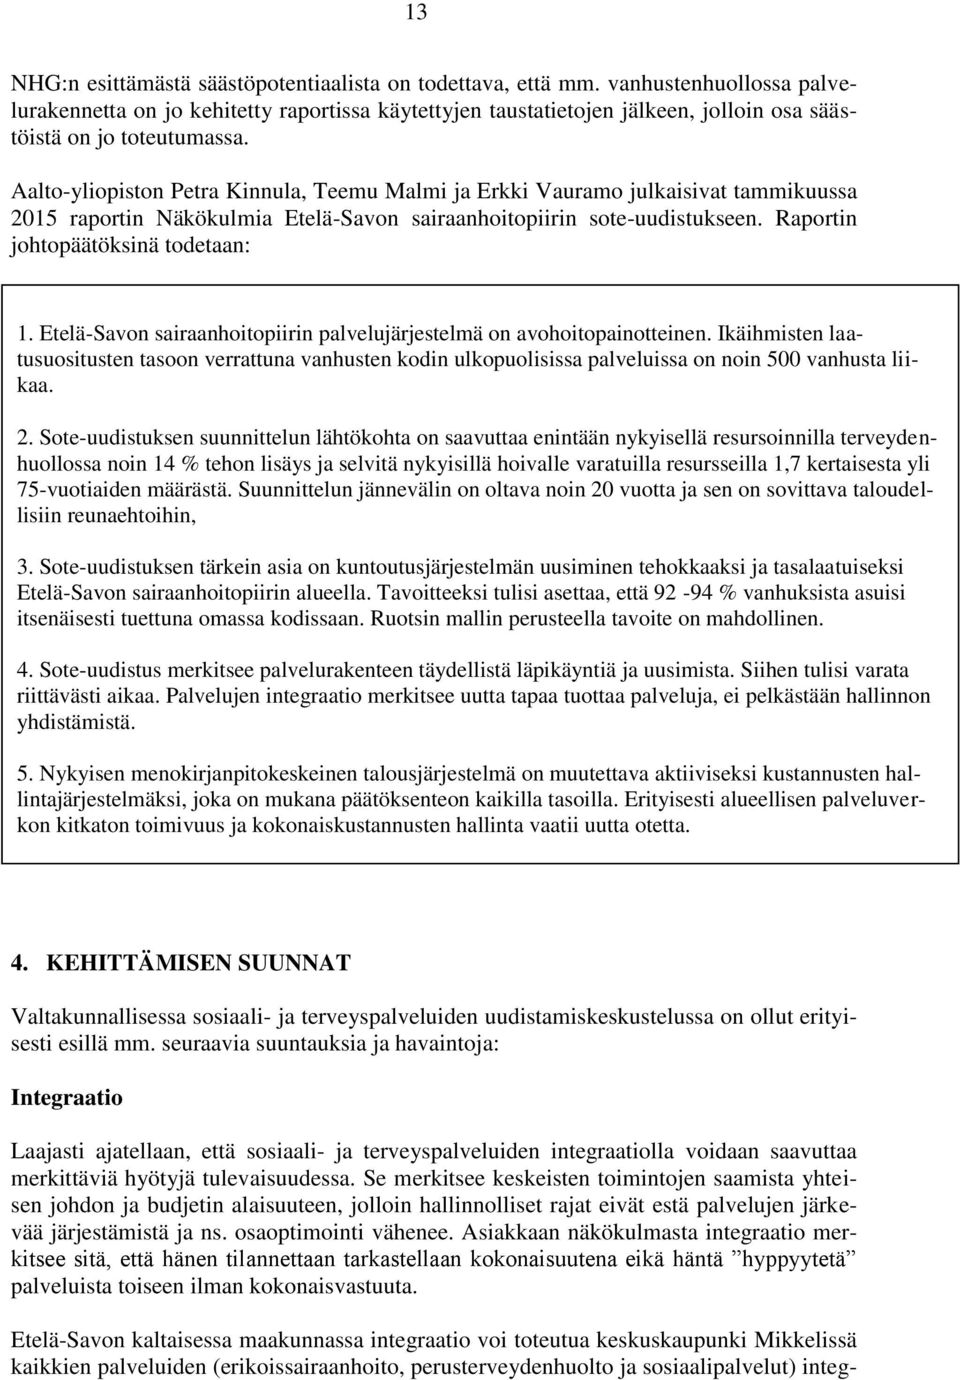 Aalto-yliopiston Petra Kinnula, Teemu Malmi ja Erkki Vauramo julkaisivat tammikuussa 2015 raportin Näkökulmia Etelä-Savon sairaanhoitopiirin sote-uudistukseen. Raportin johtopäätöksinä todetaan: 1.